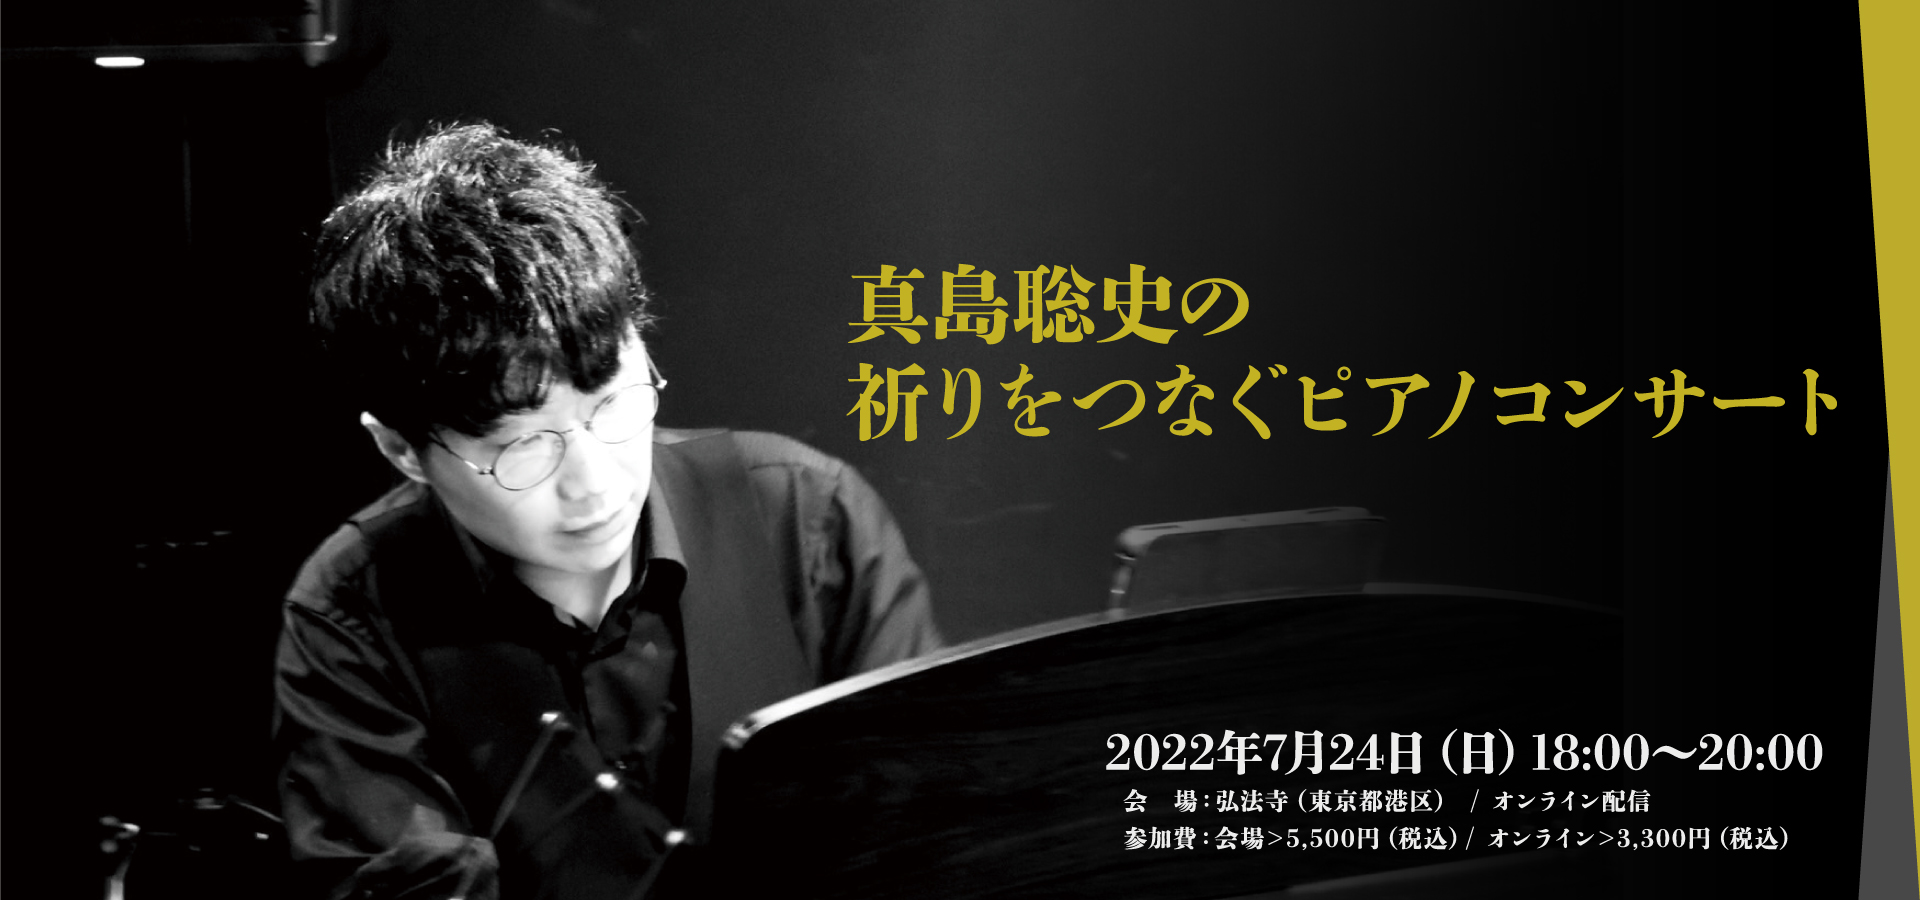 真島聡史の祈りをつなぐピアノコンサート